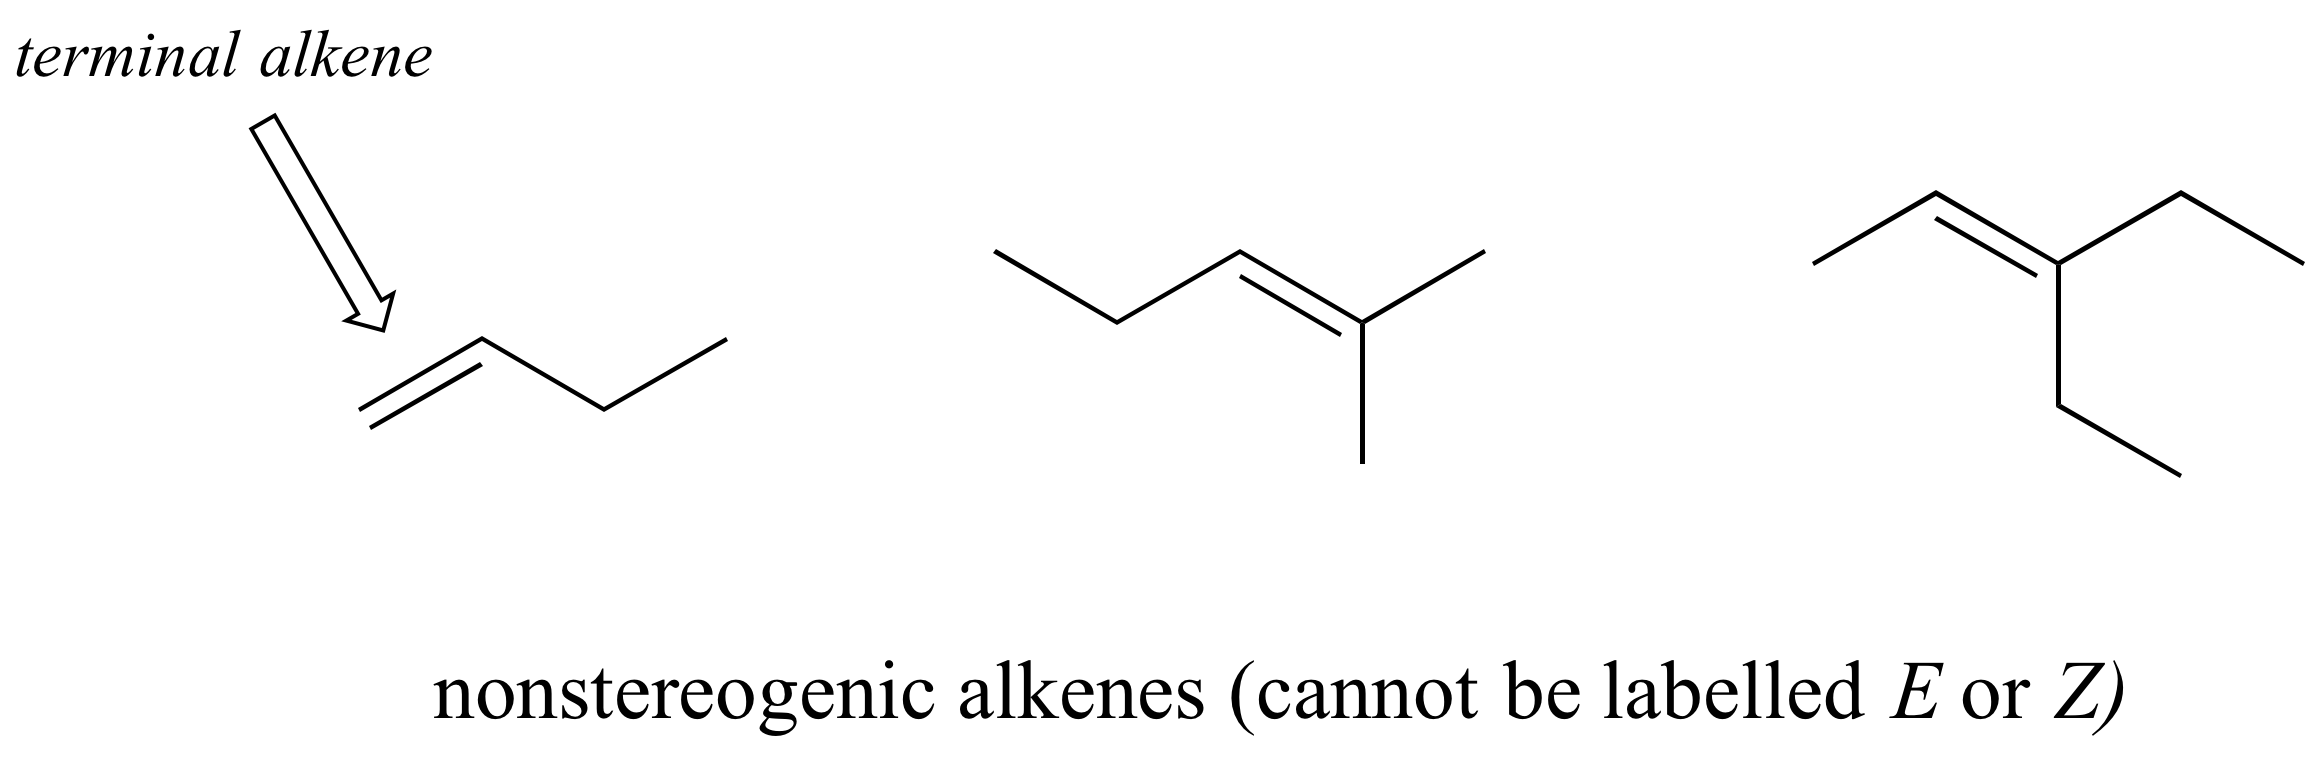 Tres alquenos no teratogénicos; alqueno terminal más a la izquierda. Texto: no se puede etiquetar E o Z.